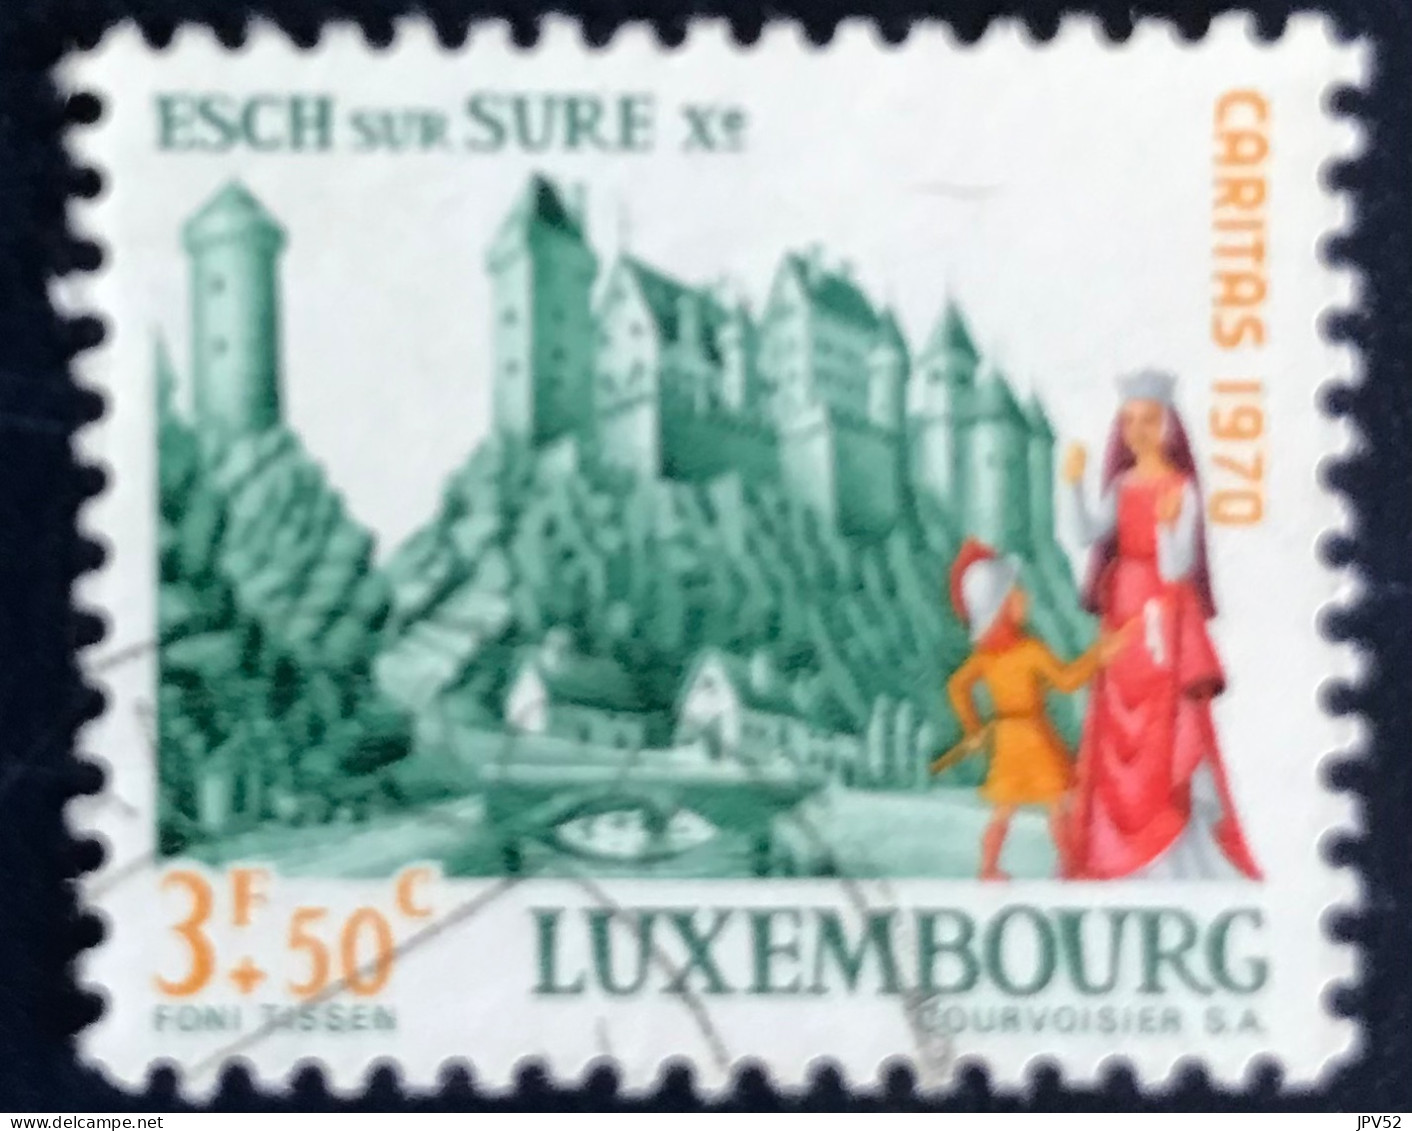 Luxembourg - Luxemburg - C18/34 - 1970 - (°)used - Michel 817 - Kasteel Esch-sur-Süre - Usados